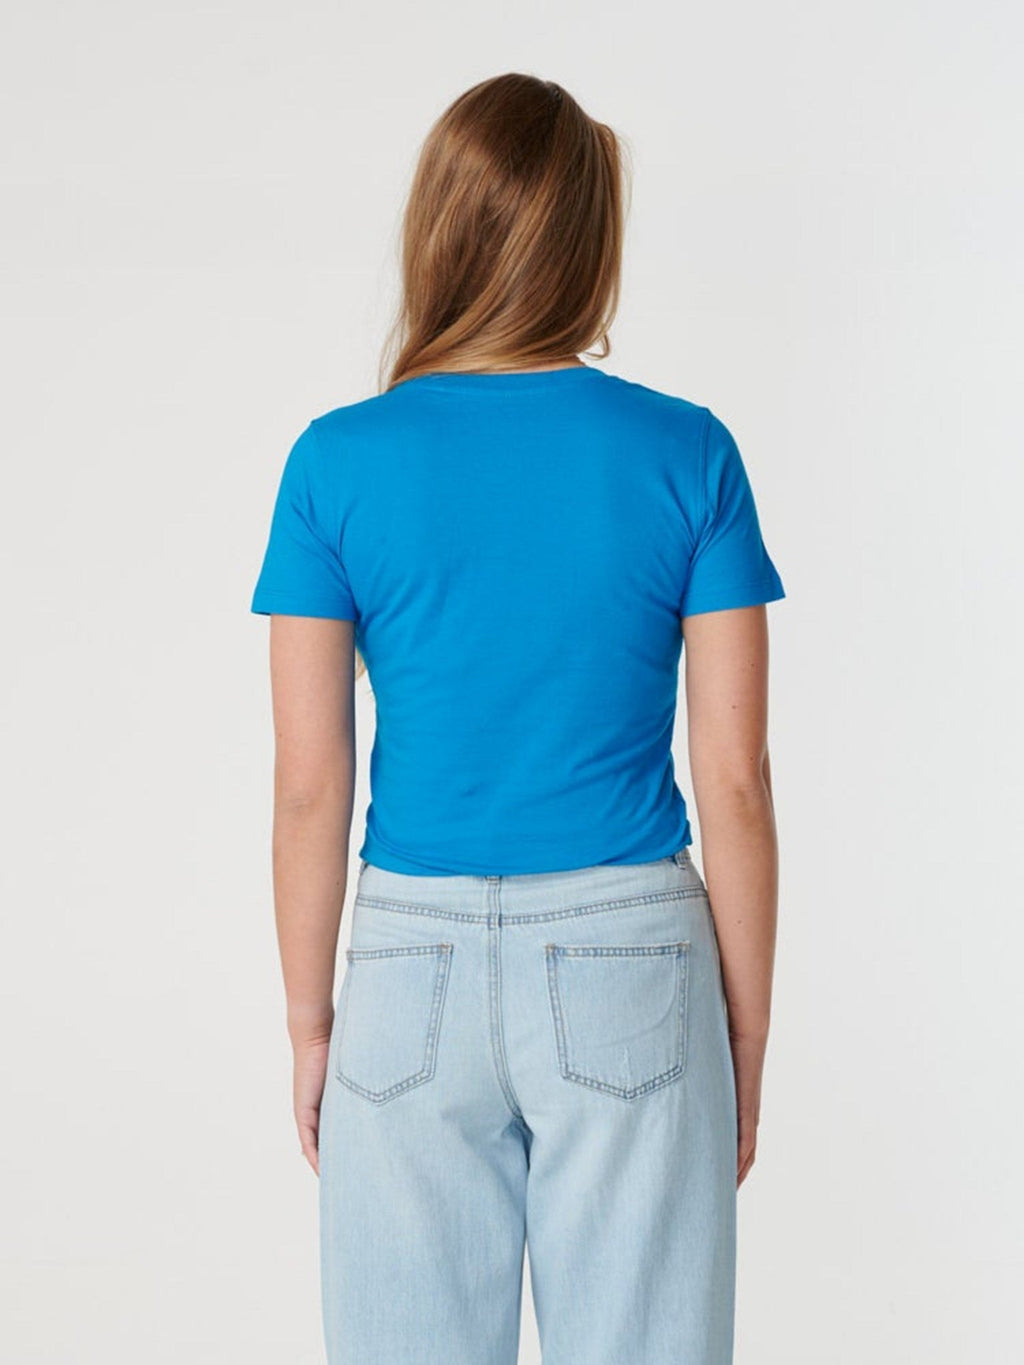 Gemonteerd t-shirt-torquoise blauw